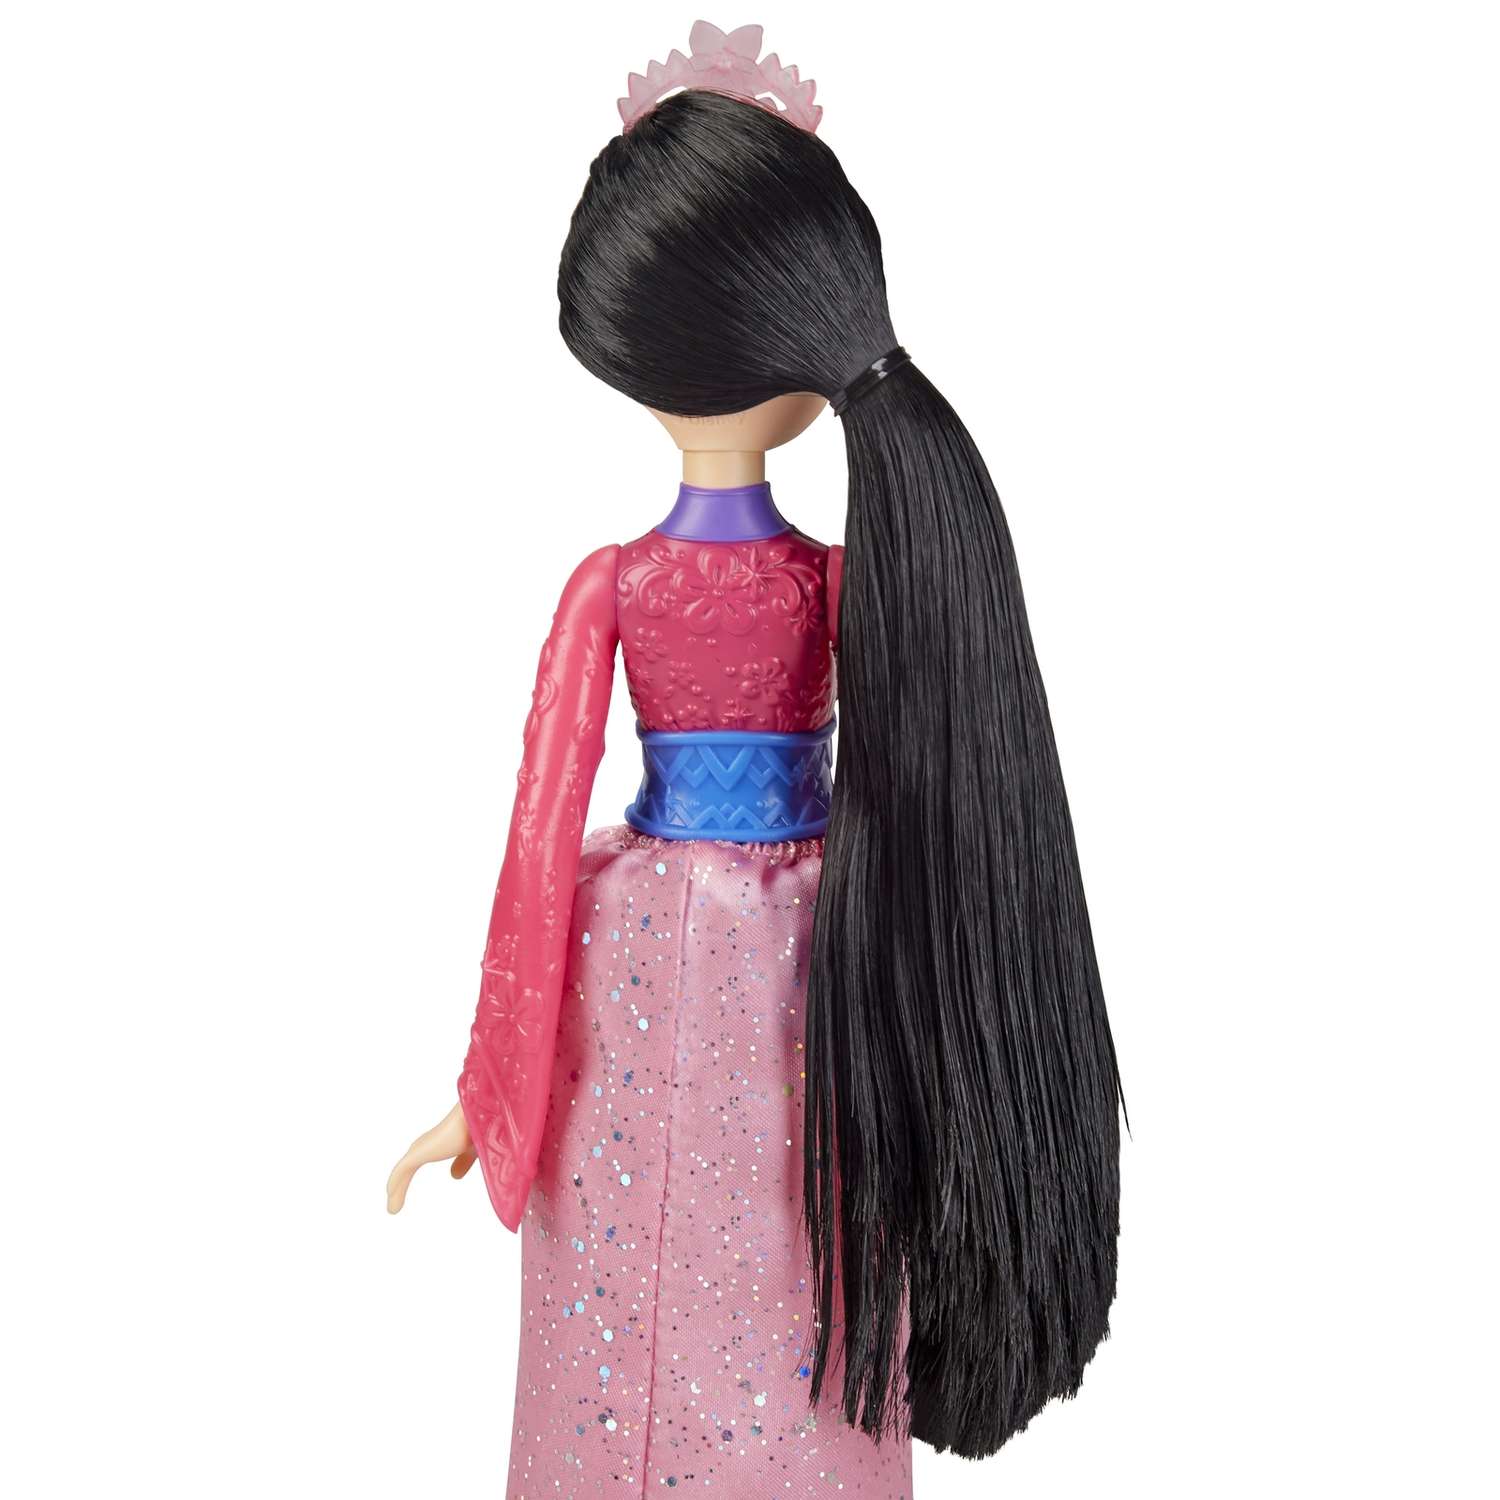 Кукла Disney Princess Hasbro C Мулан E4167EU4 E4022EU4 - фото 8